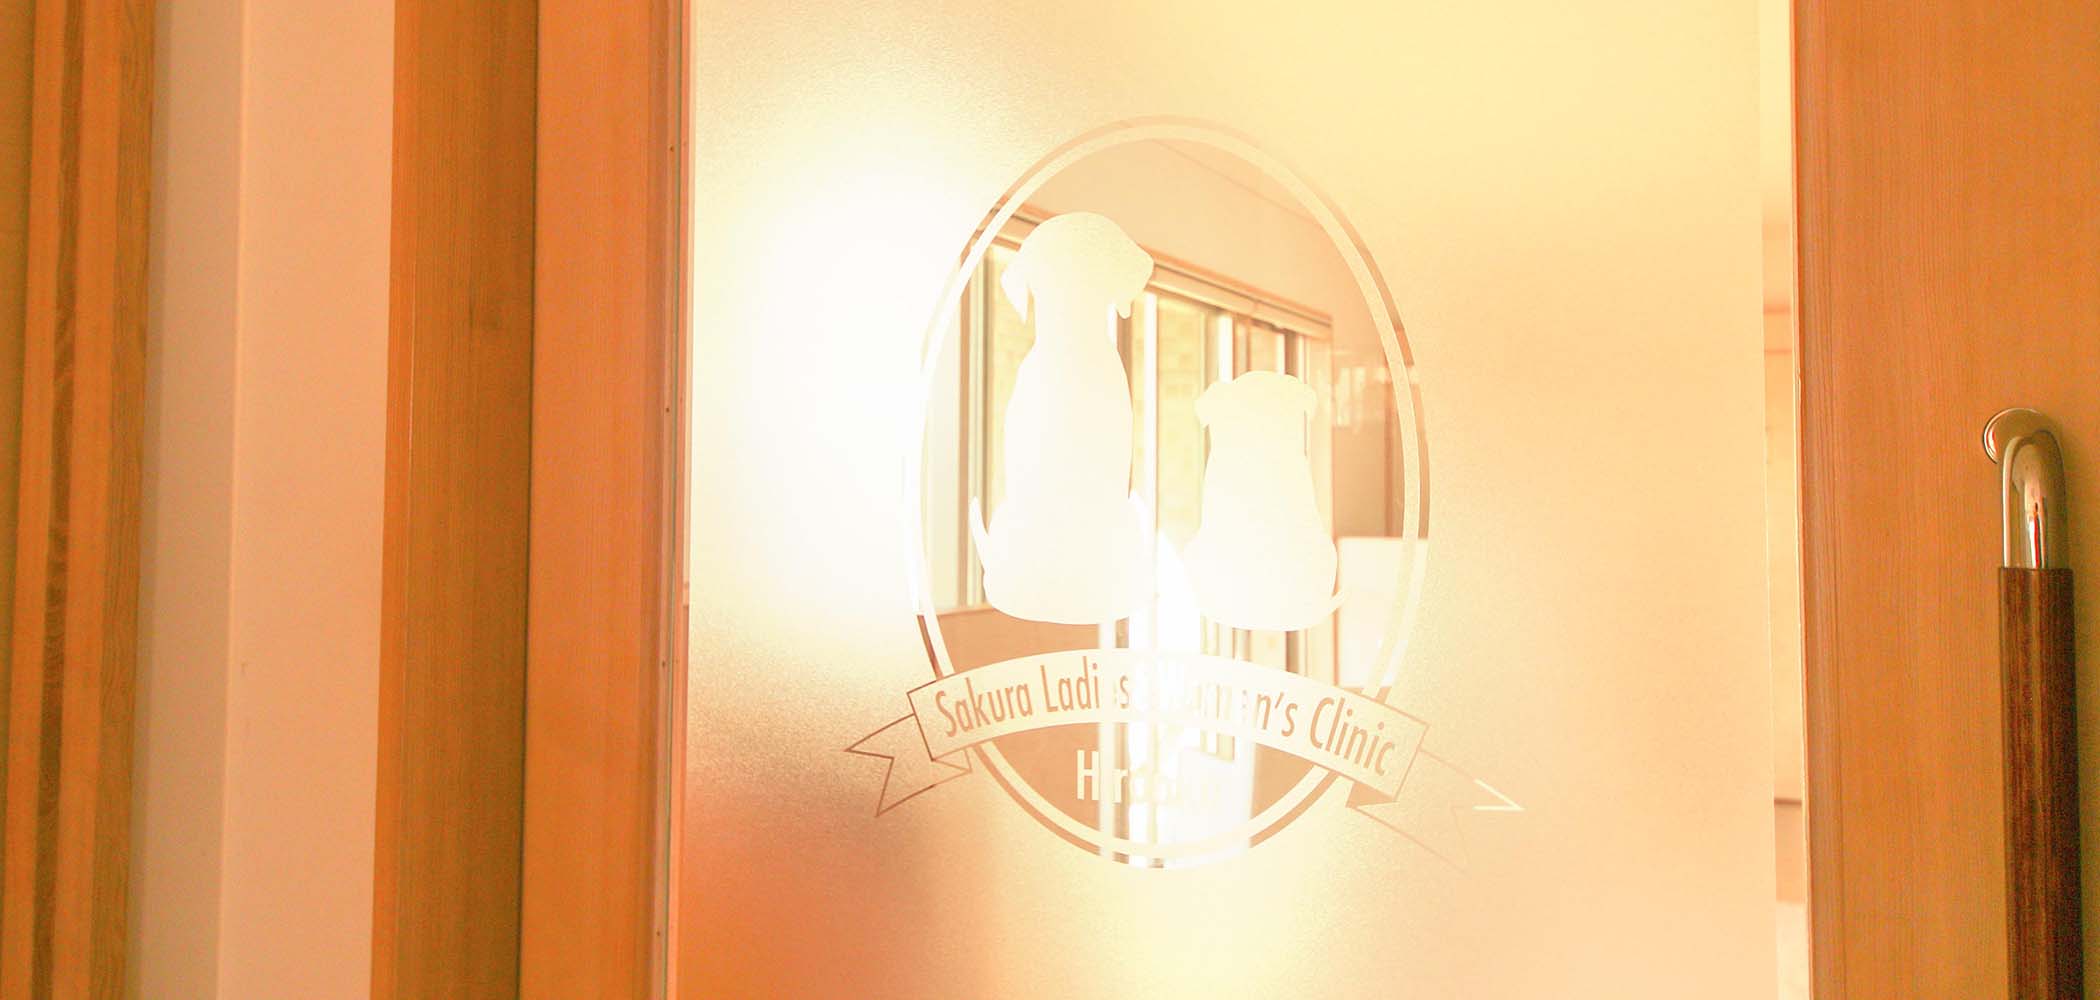 院内のドアに映るさくらレディースウィメンズクリニックのロゴ